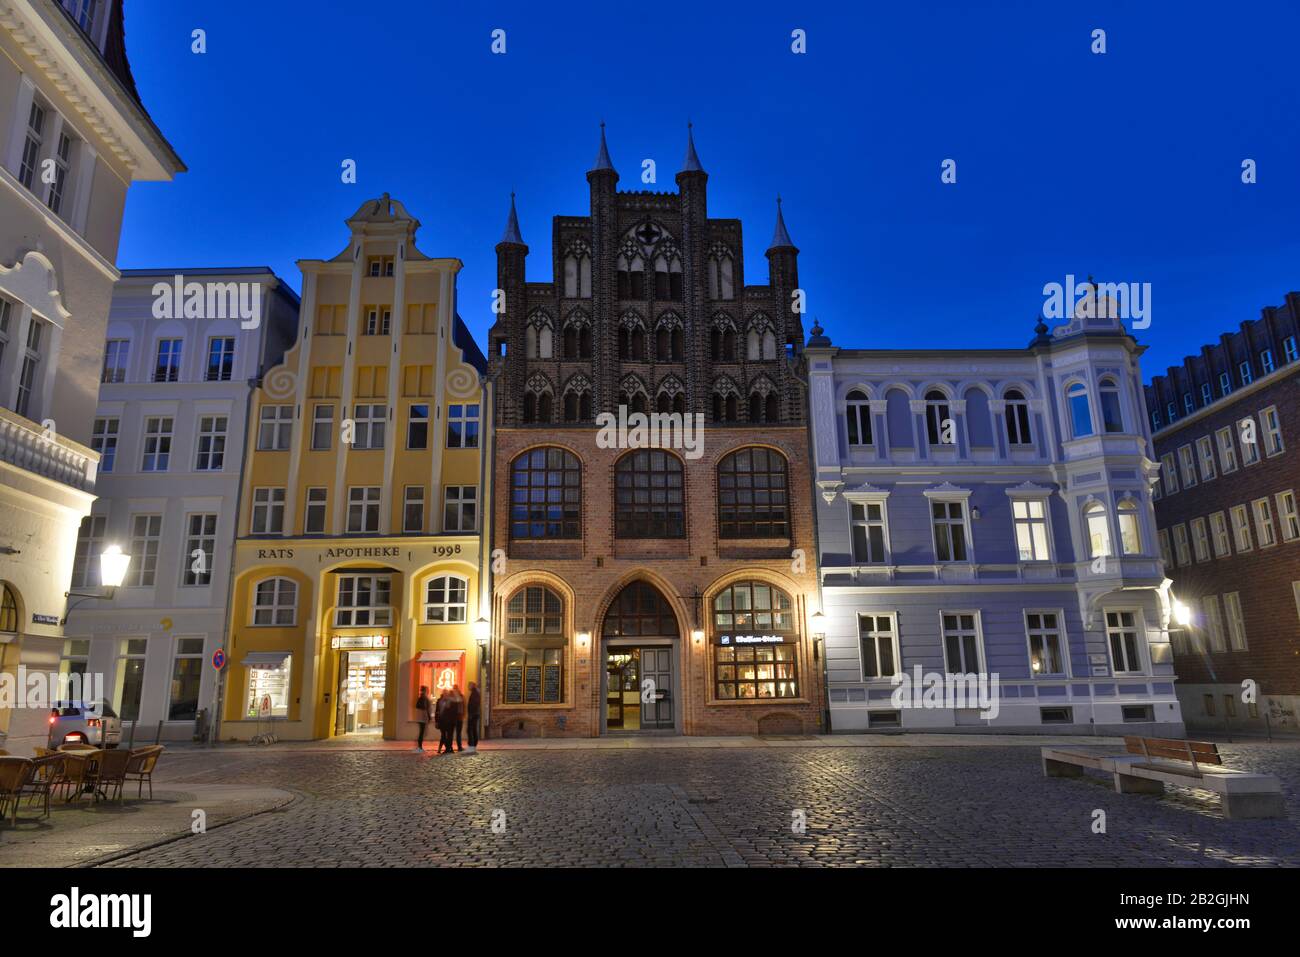 Wulflamhaus, Alter Markt, Nordseite, Altstadt, Stralsund, Mecklenburg-Vorpommern, Allemagne Banque D'Images